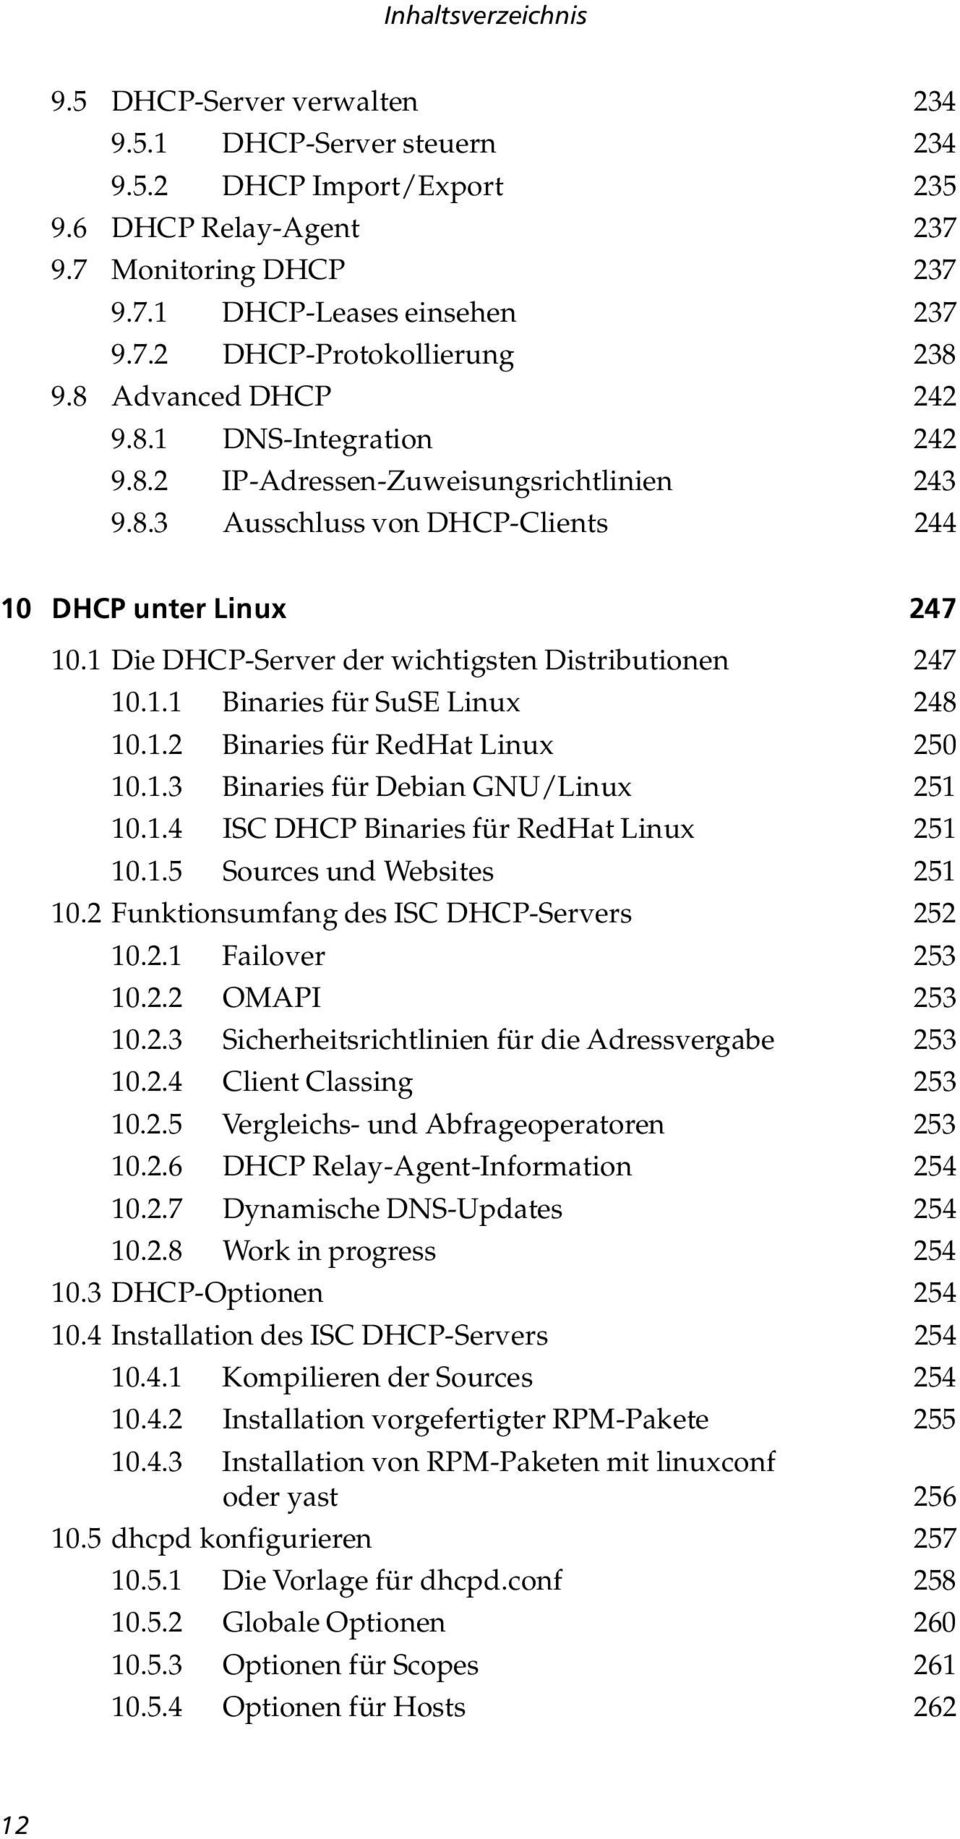 1 Die DHCP-Server der wichtigsten Distributionen 247 10.1.1 Binaries für SuSE Linux 248 10.1.2 Binaries für RedHat Linux 250 10.1.3 Binaries für Debian GNU/Linux 251 10.1.4 ISC DHCP Binaries für RedHat Linux 251 10.